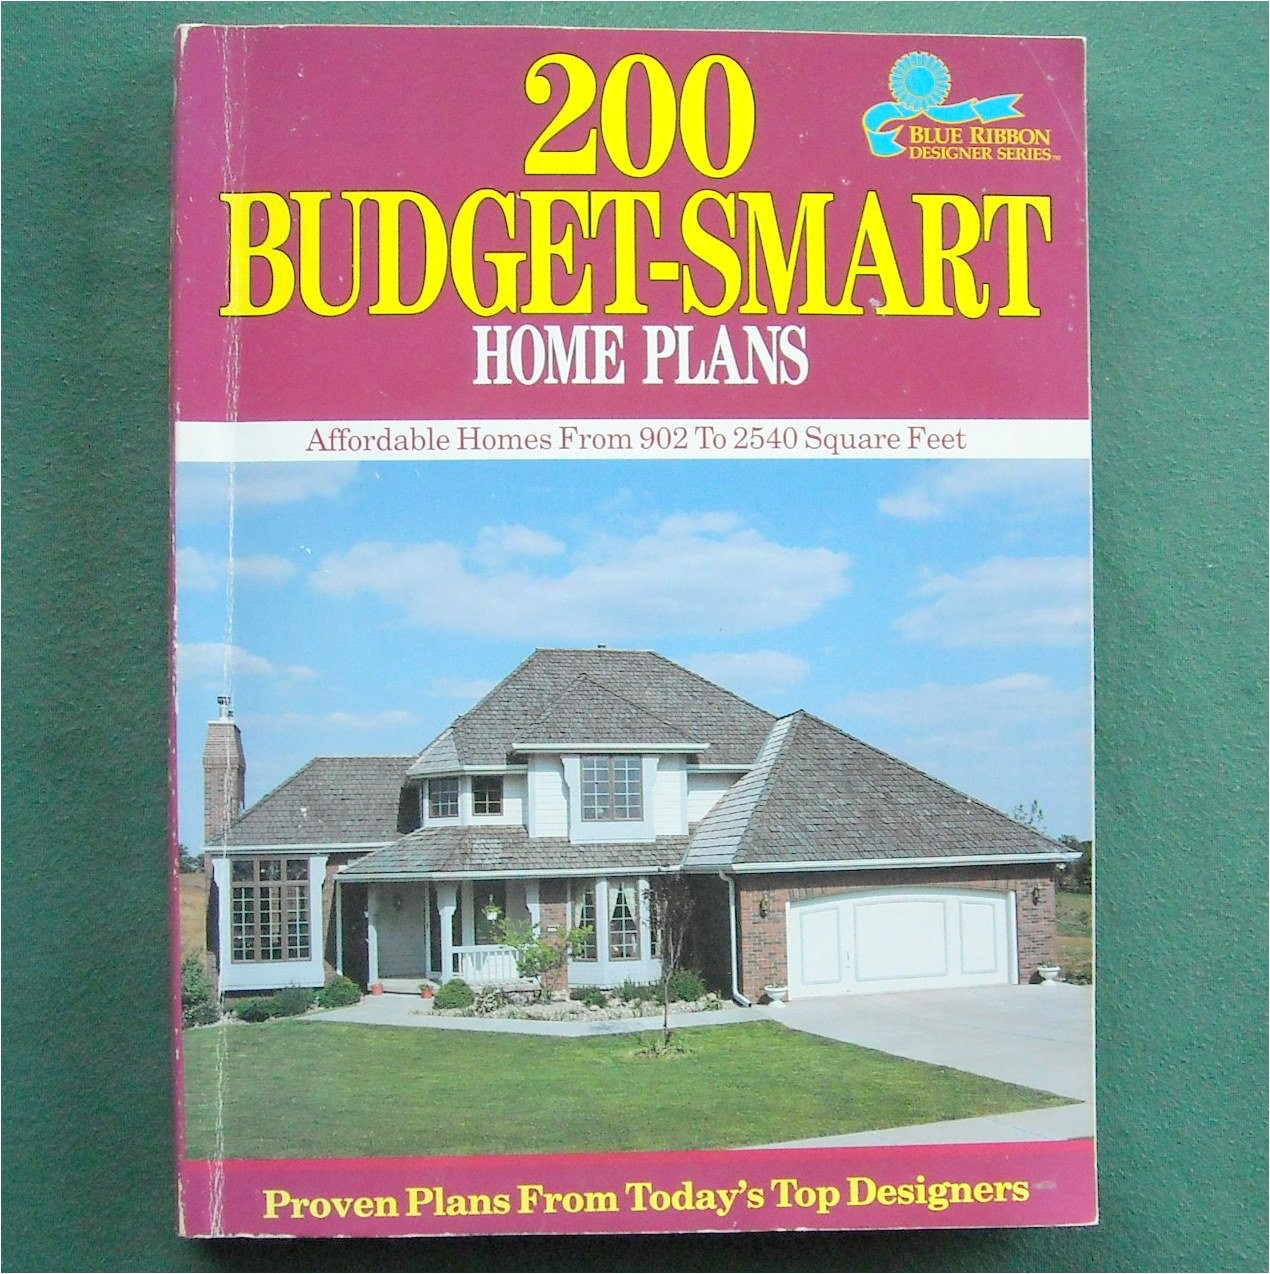 Budget Smart Home Plans 200 Budget Smart Home Plans Blue Ribbon isbn 0918894972